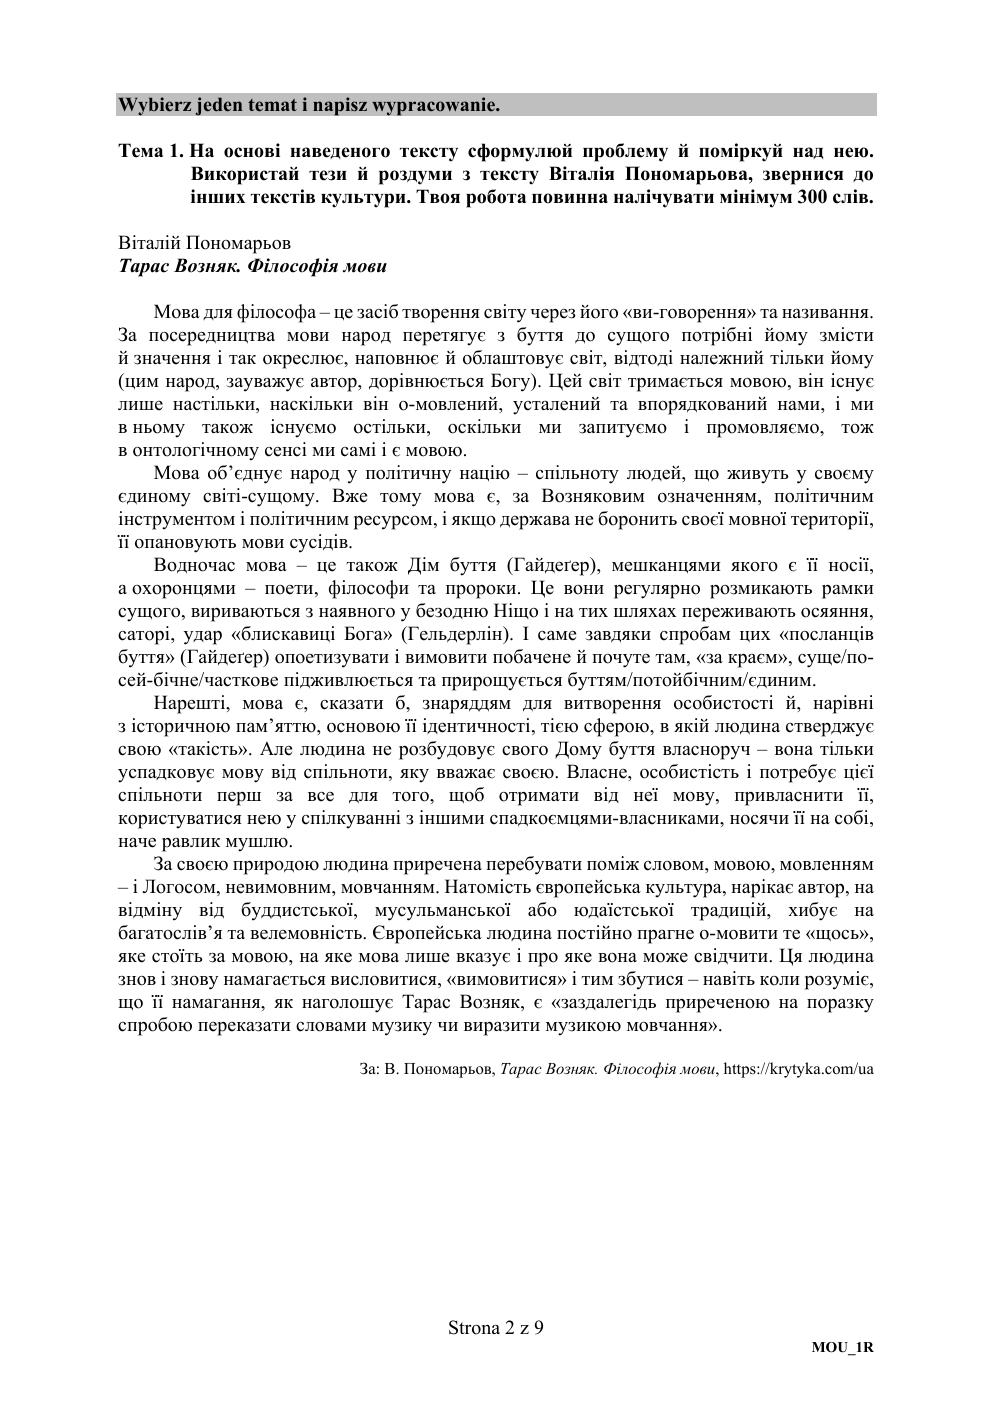 matura-2019-jezyk-ukrainski-rozszerzony-2